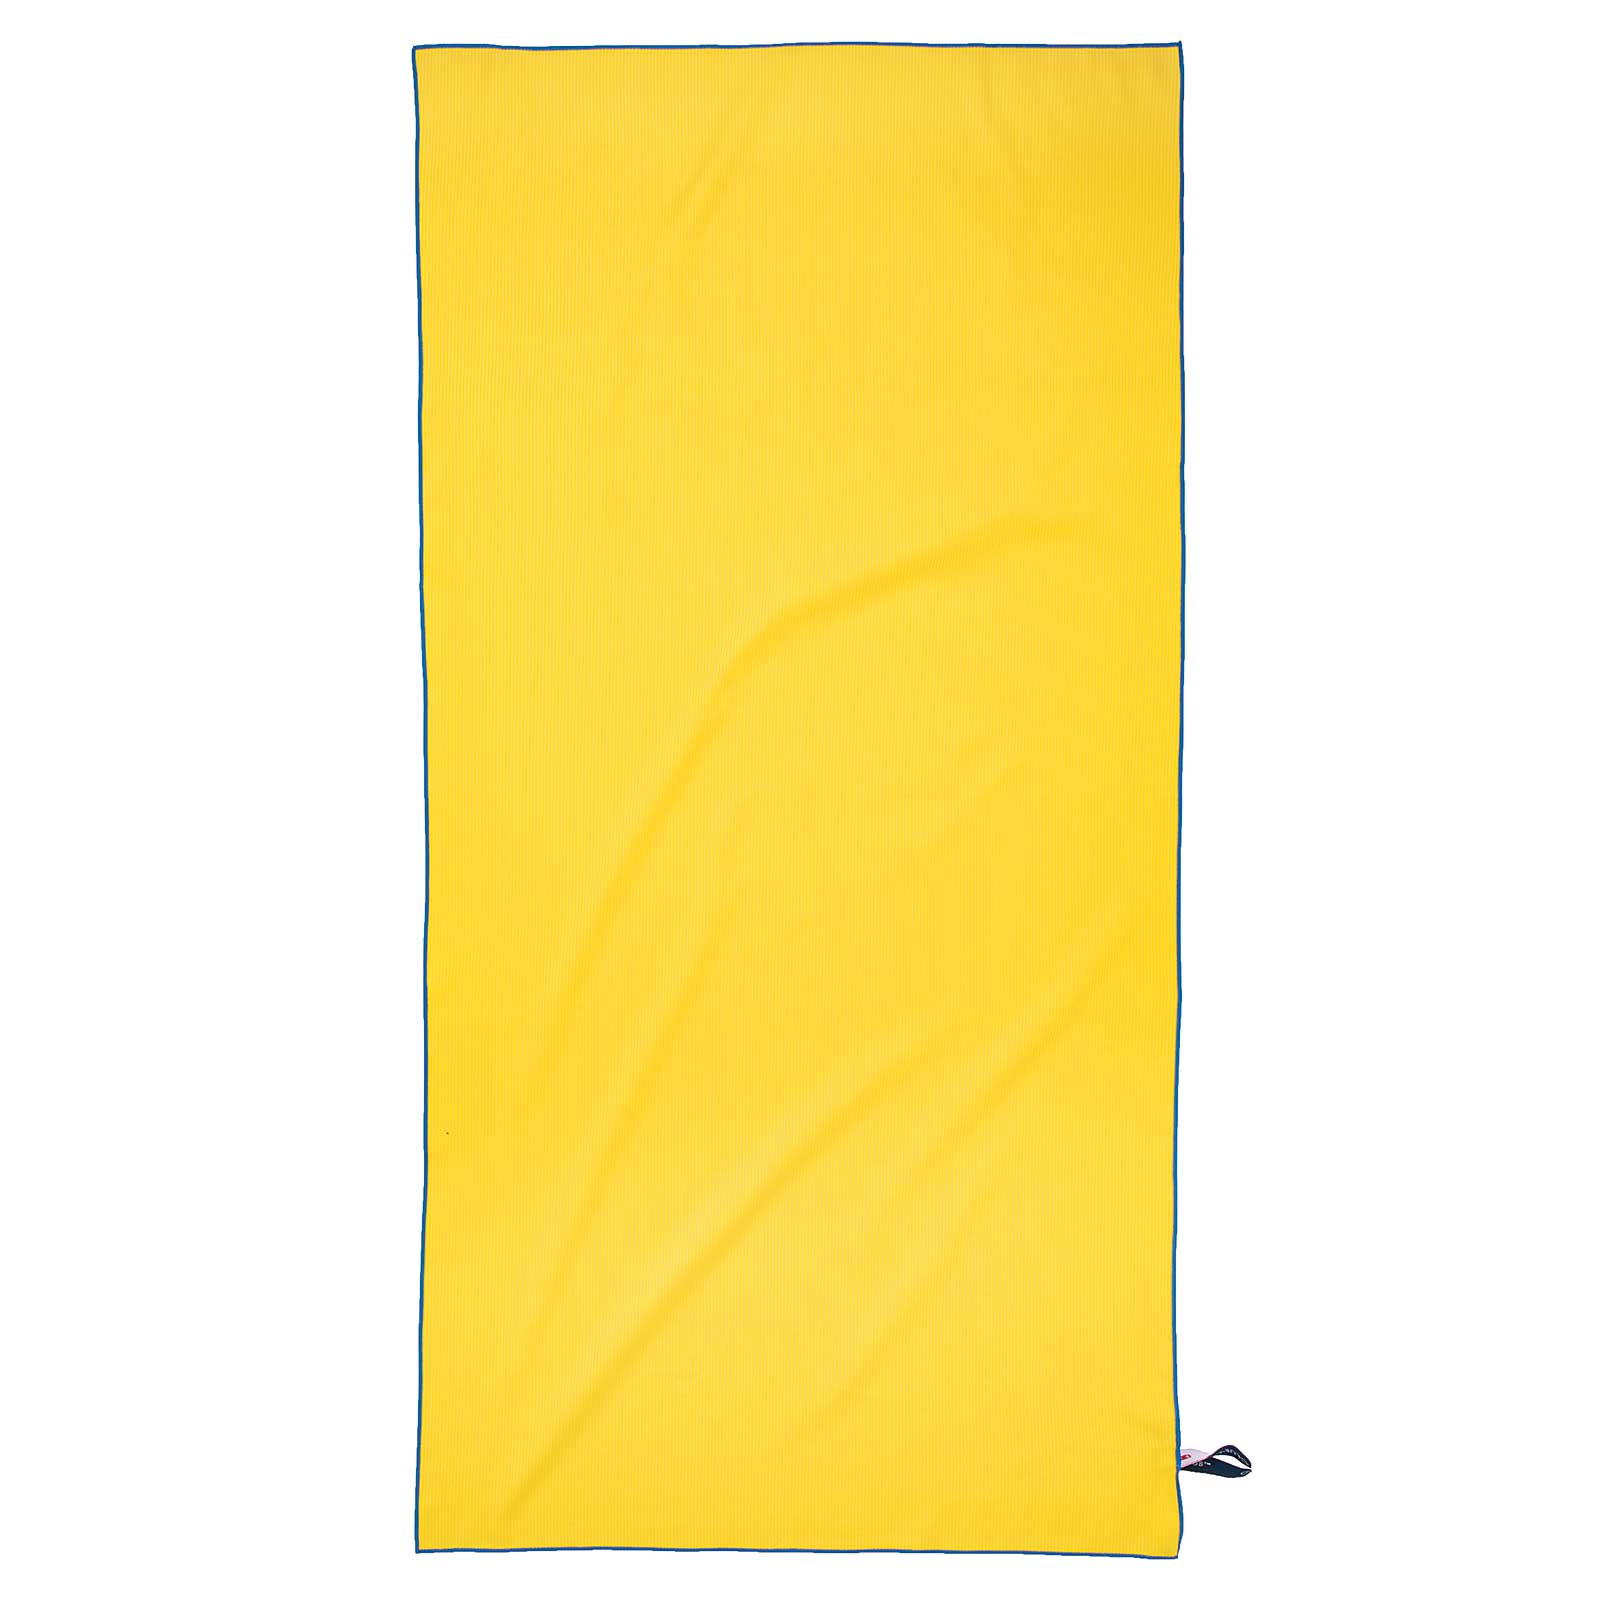 Πετσέτα Θαλάσσης Microfiber 80×160εκ. Essential 3748 Κίτρινη Greenwich Polo Club (Ύφασμα: Microfiber, Χρώμα: Κίτρινο ) – Greenwich Polo Club – 267801603748